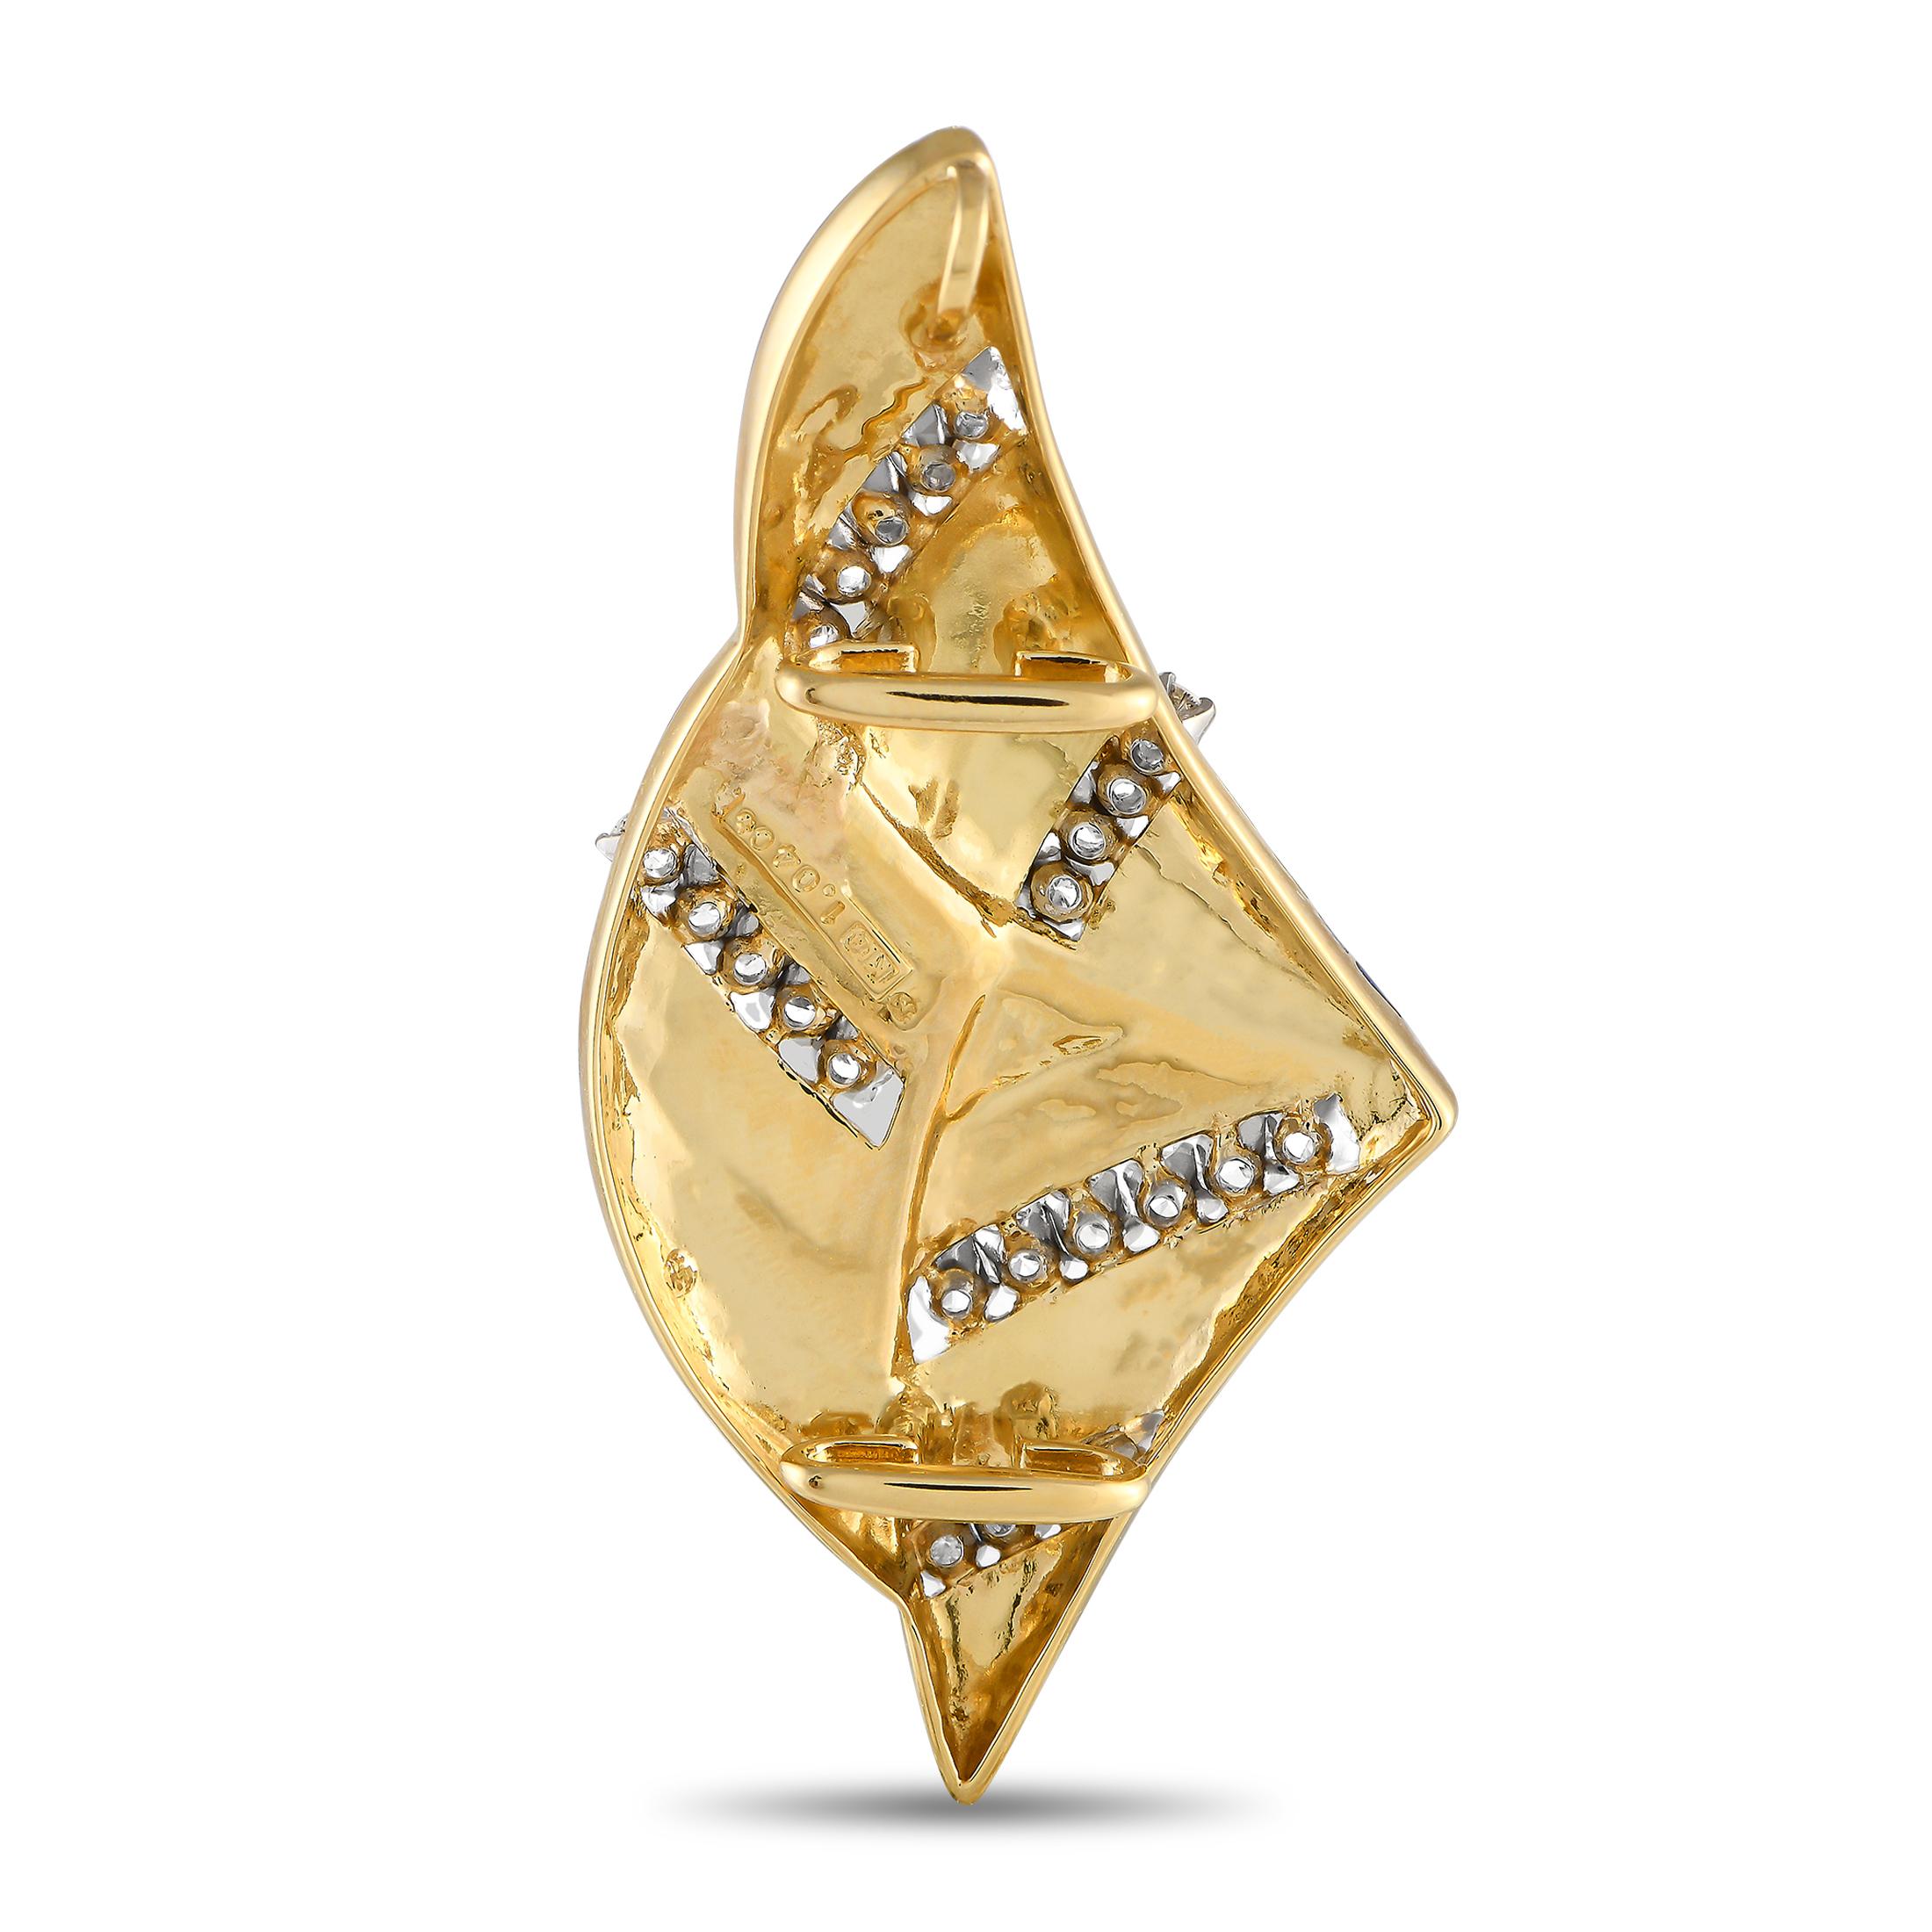 Réalisé en or jaune 18 carats, ce rare pendentif d'inspiration Art déco de Mikimoto, rehaussé de diamants, est prêt à mettre vos looks à la mode. Le pendentif présente de larges bandes d'émail bleu tracées avec de l'or jaune et des rubans de